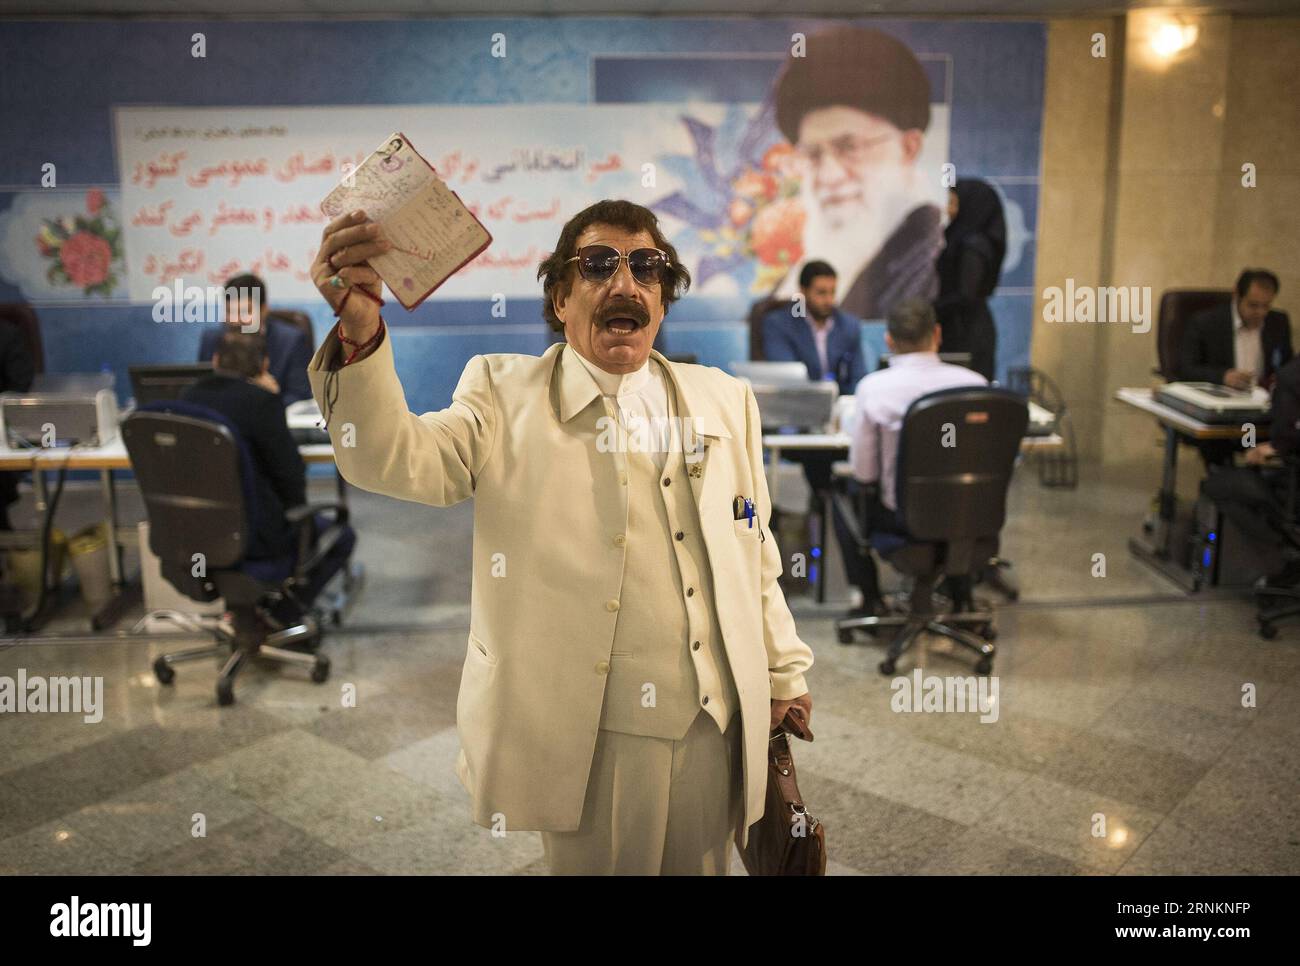 (170413)-- TEHERAN, 13 aprile 2017 -- un uomo iraniano mostra le sue identificazioni dopo aver registrato la sua candidatura per la corsa presidenziale presso il Ministero dell'interno a Teheran, capitale dell'Iran, il 13 aprile 2017. La registrazione dei candidati per la dodicesima corsa presidenziale iraniana è iniziata a Teheran martedì mattina. ) IRAN-TEHERAN-PRESIDENZIALE GARA-REGISTRAZIONE DEI CANDIDATI AhmadxHalabisaz PUBLICATIONxNOTxINxCHN TEHERAN 13 aprile 2017 a Iranian Man mostra la sua identificazione dopo aver registrato la sua candidatura per la corsa presidenziale PRESSO il Ministero dell'interno a TEHERAN capitale dell'Iran IL 13 aprile 2017 registrazione o Foto Stock